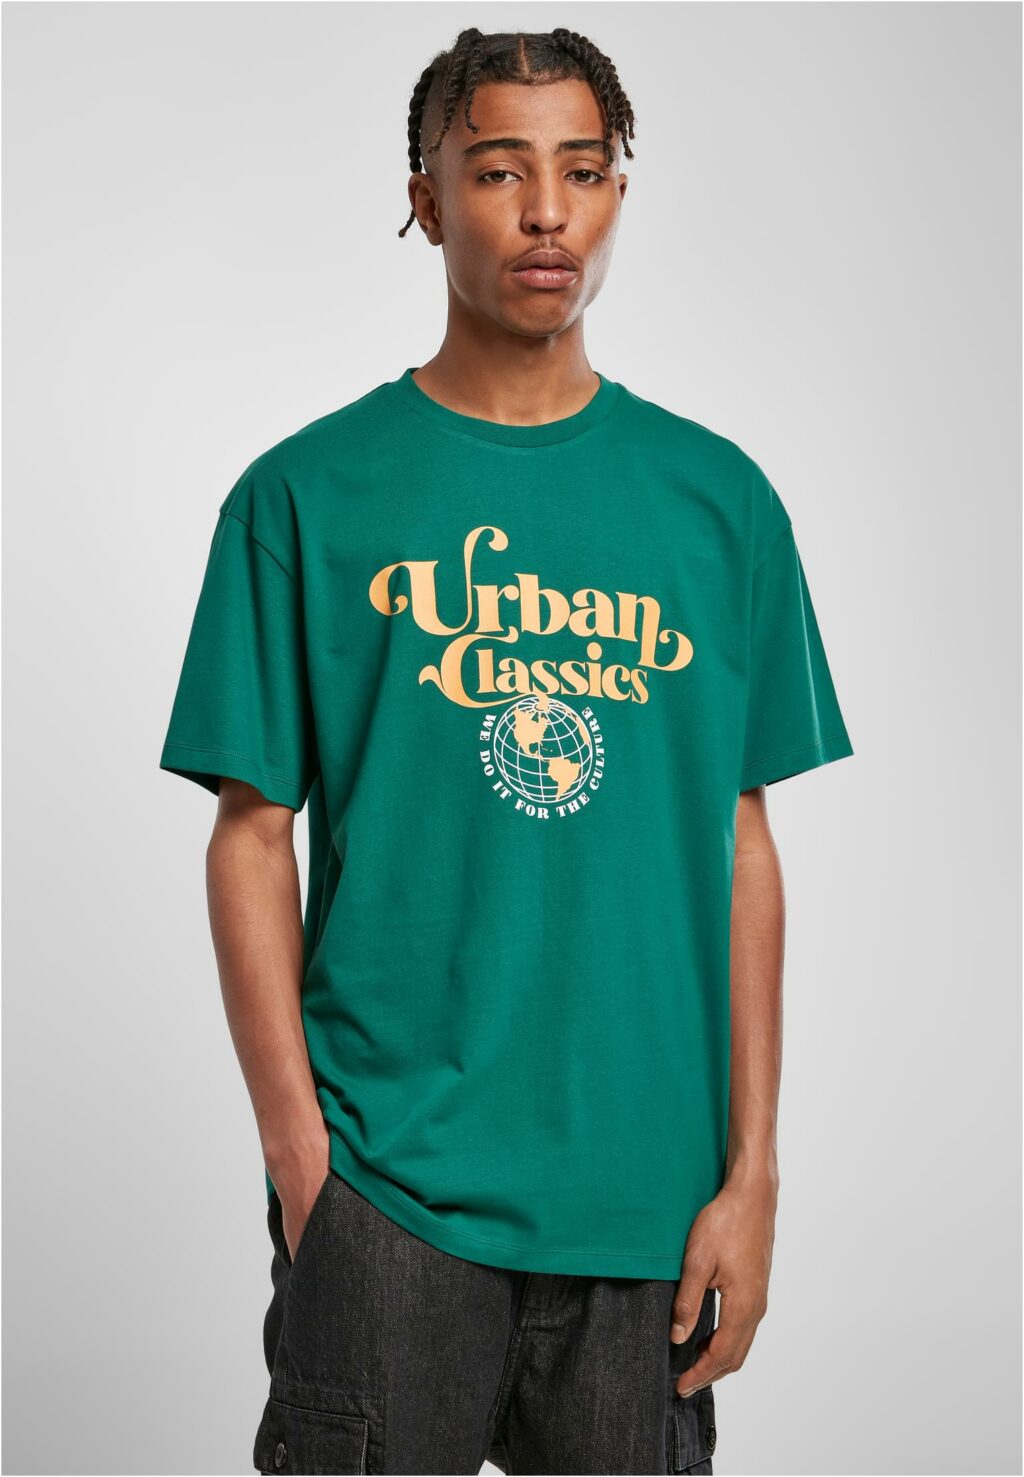 Urban Classics Organic Globe Logo Tee green TB4901